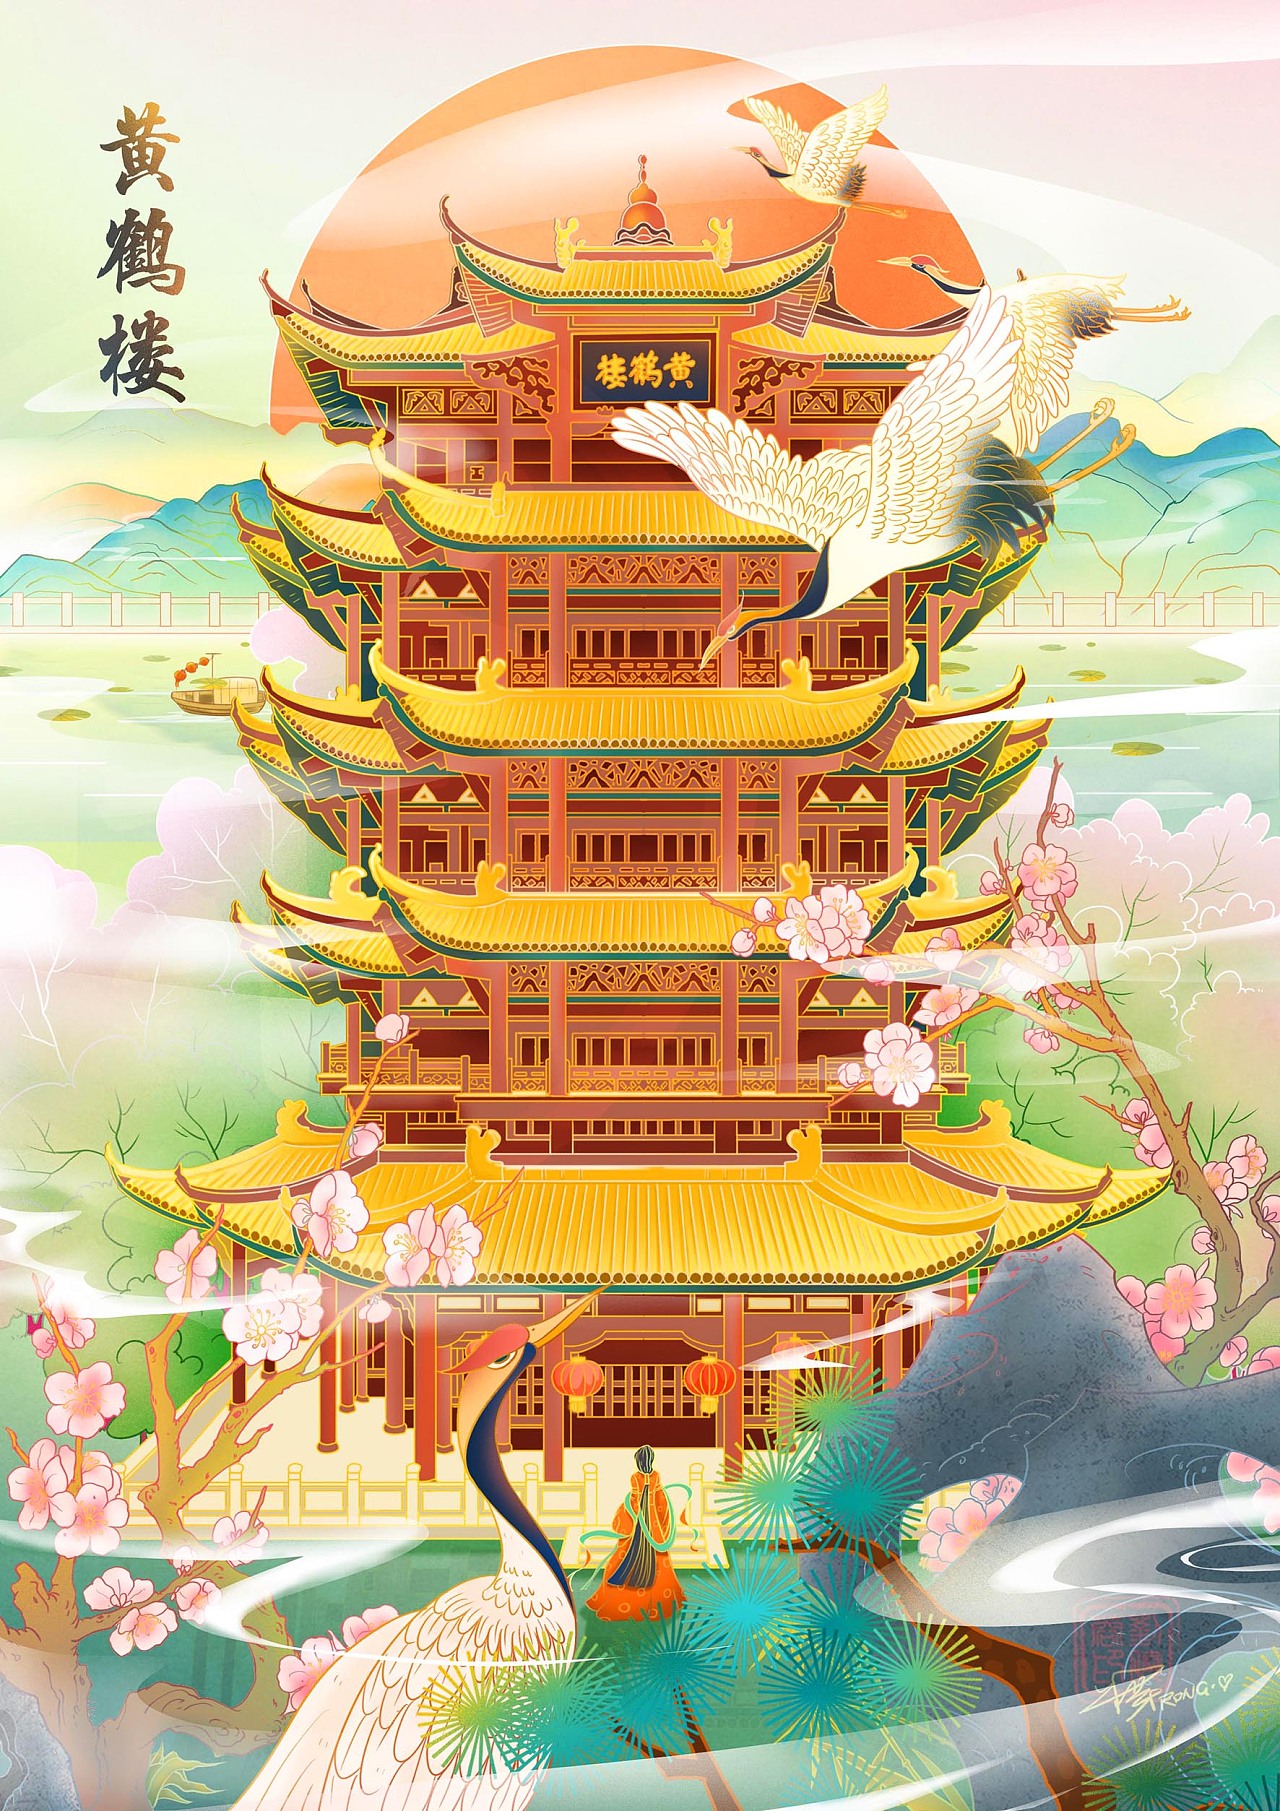 插画 武汉市标志性建筑,黄鹤楼与晴川阁,古琴台并称"武汉三大名胜""